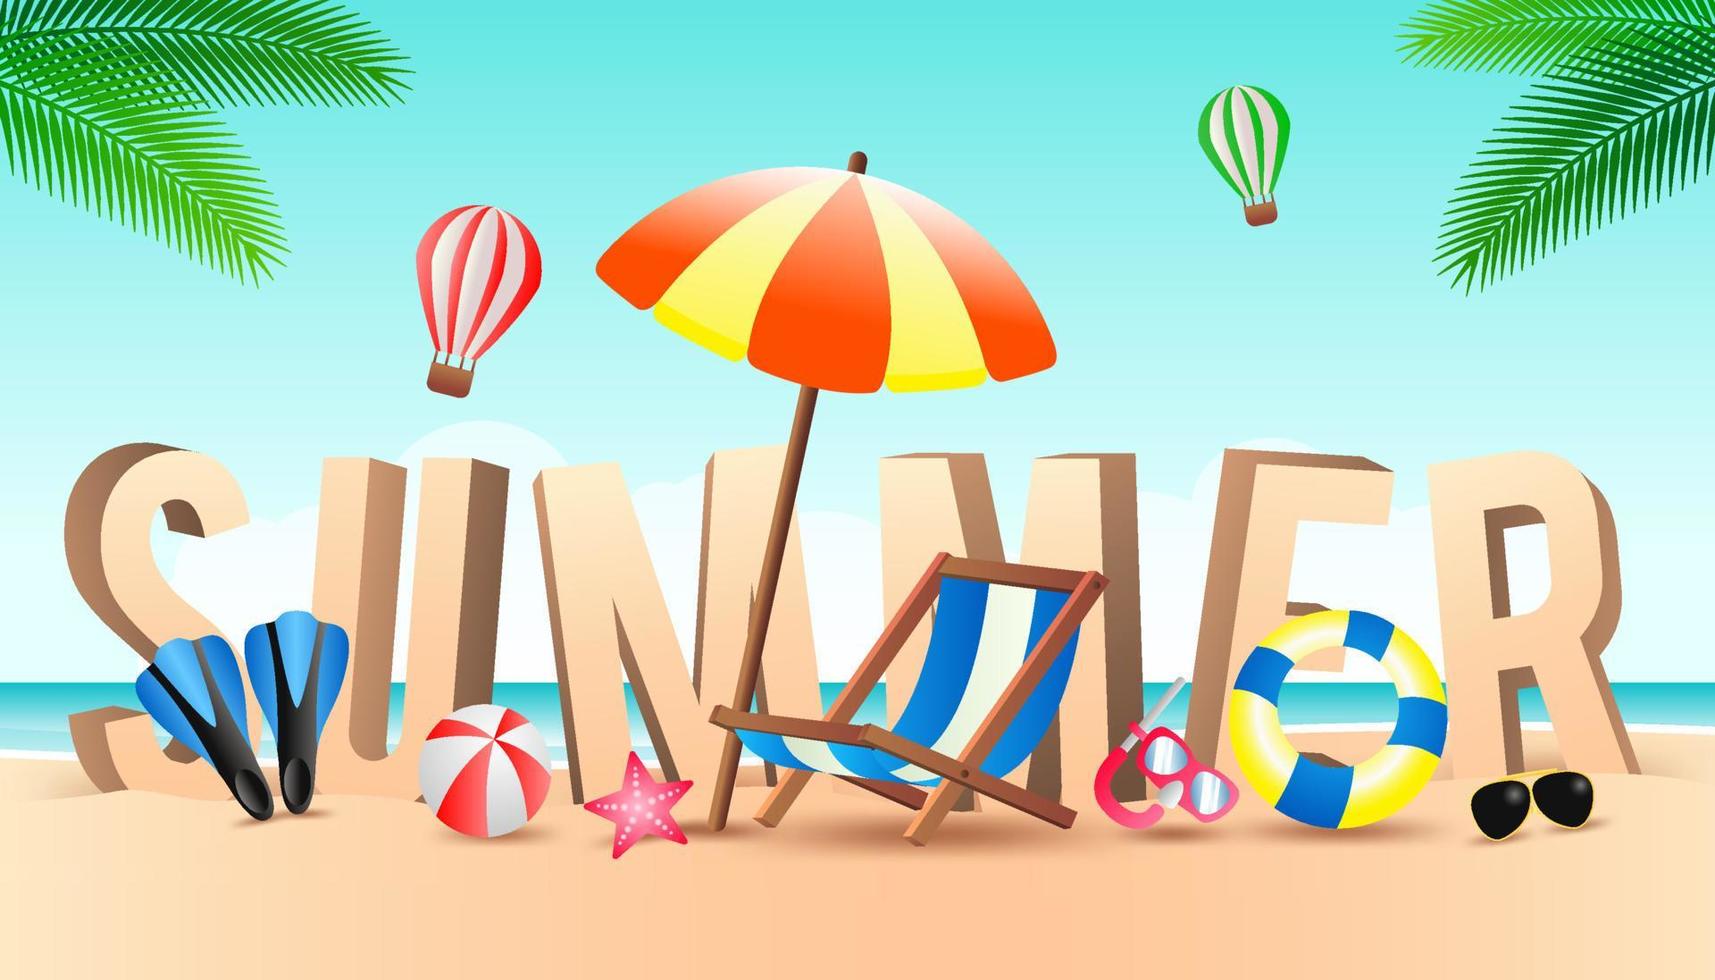 oferta de venta de verano elemento decorativo de banner con su símbolo frente a un gran texto arenoso, diseño moderno y de moda vector